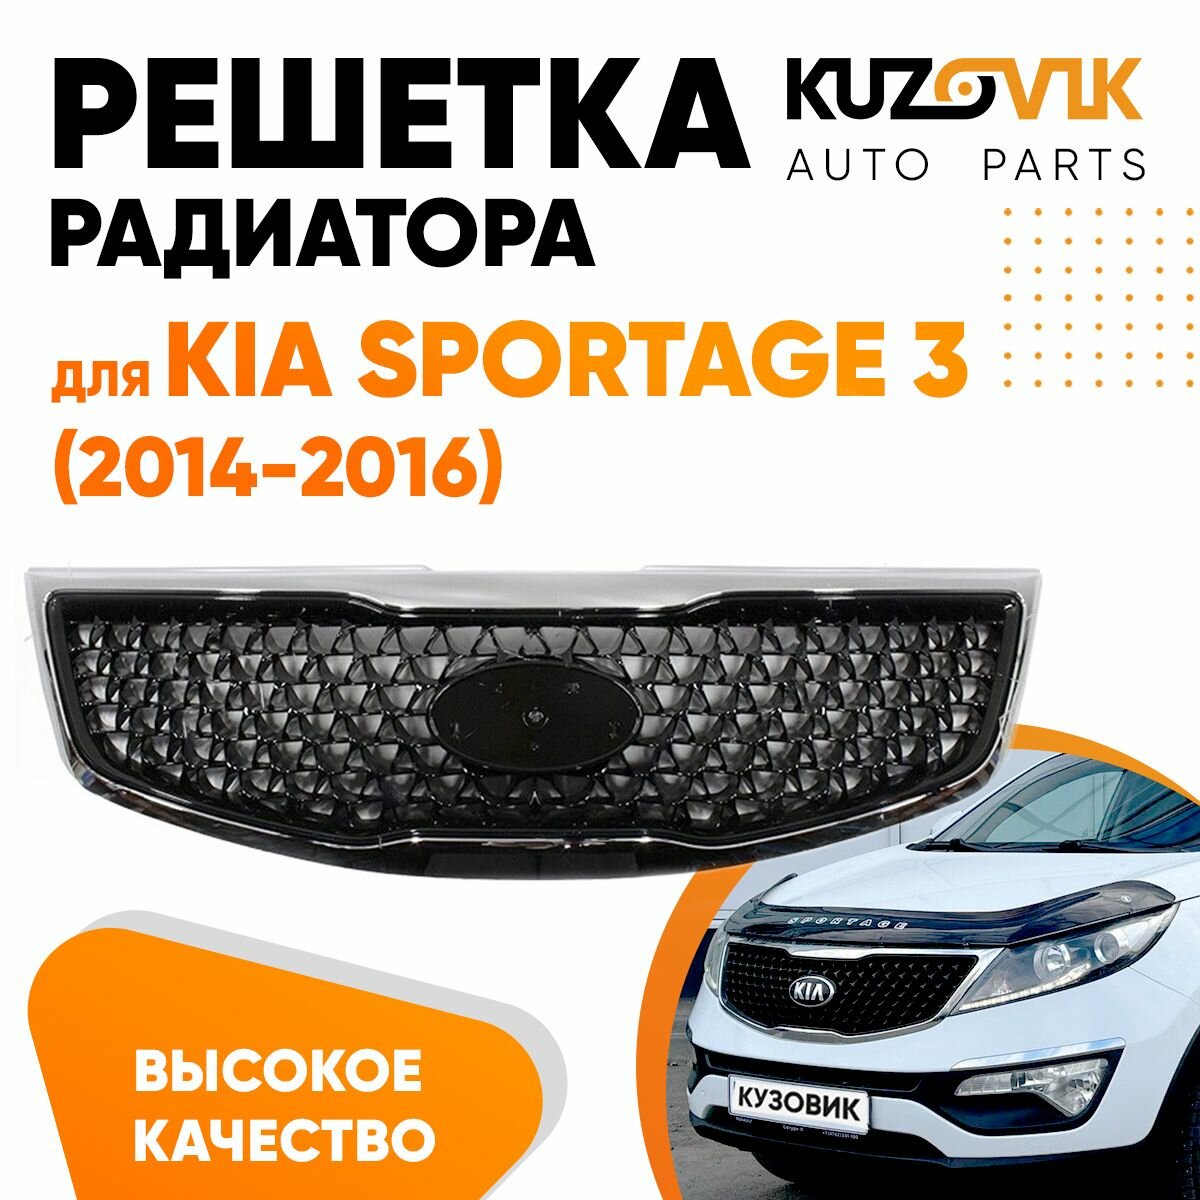 Решётка радиатора Kia Sportage 3 (2014-2016) черная с хром молдингом